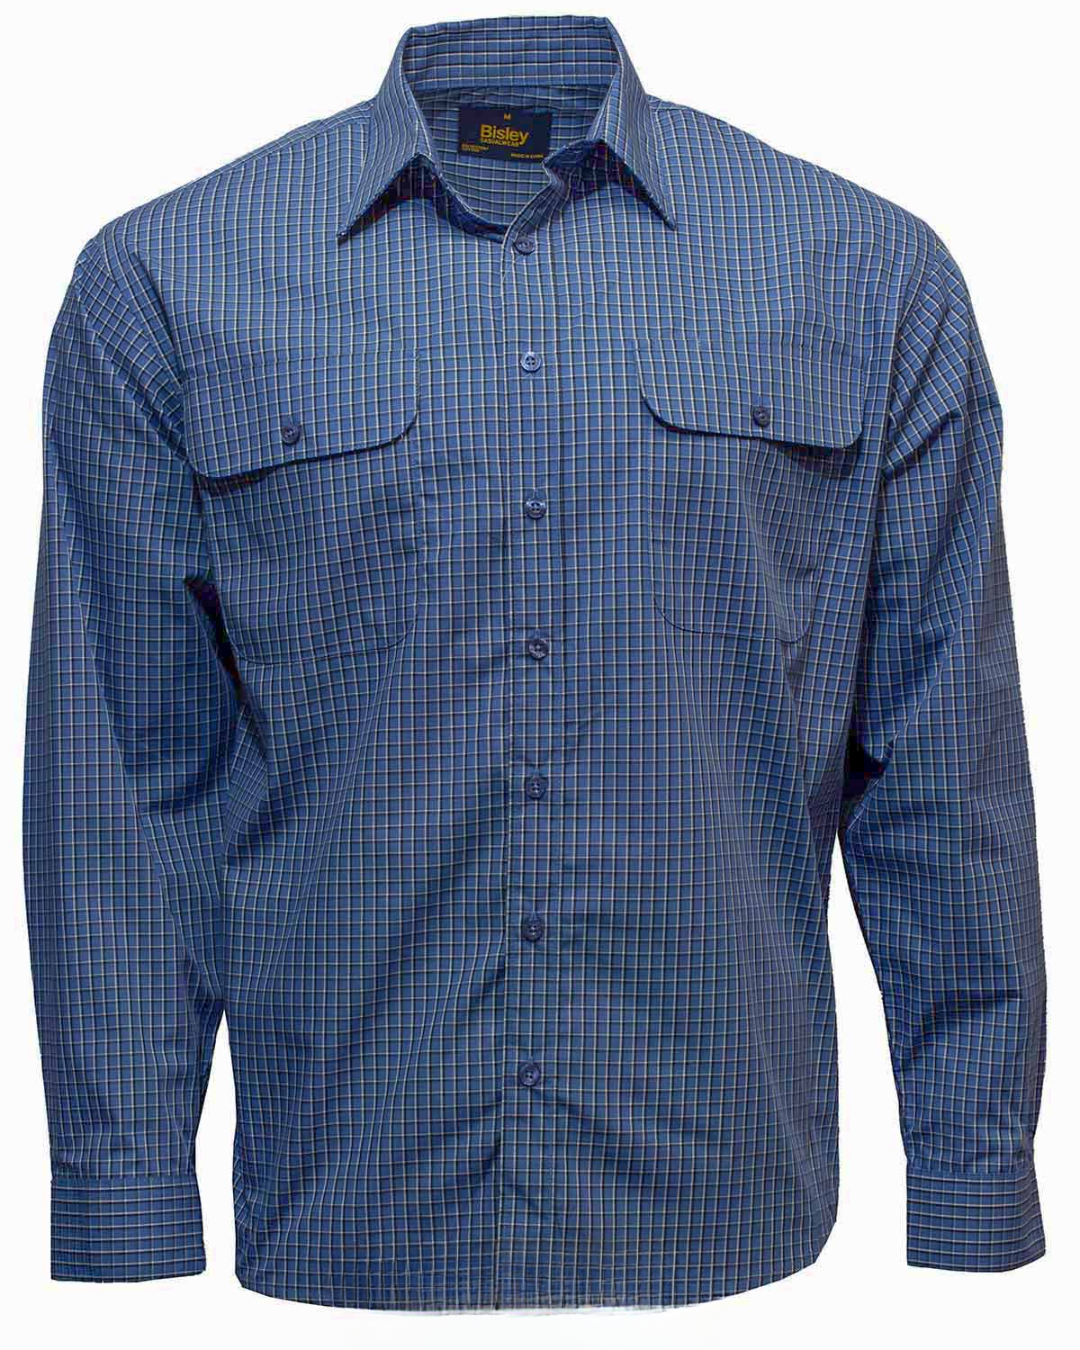 Bisley Mens Long Sleeve Small Check Shirt (Blue)